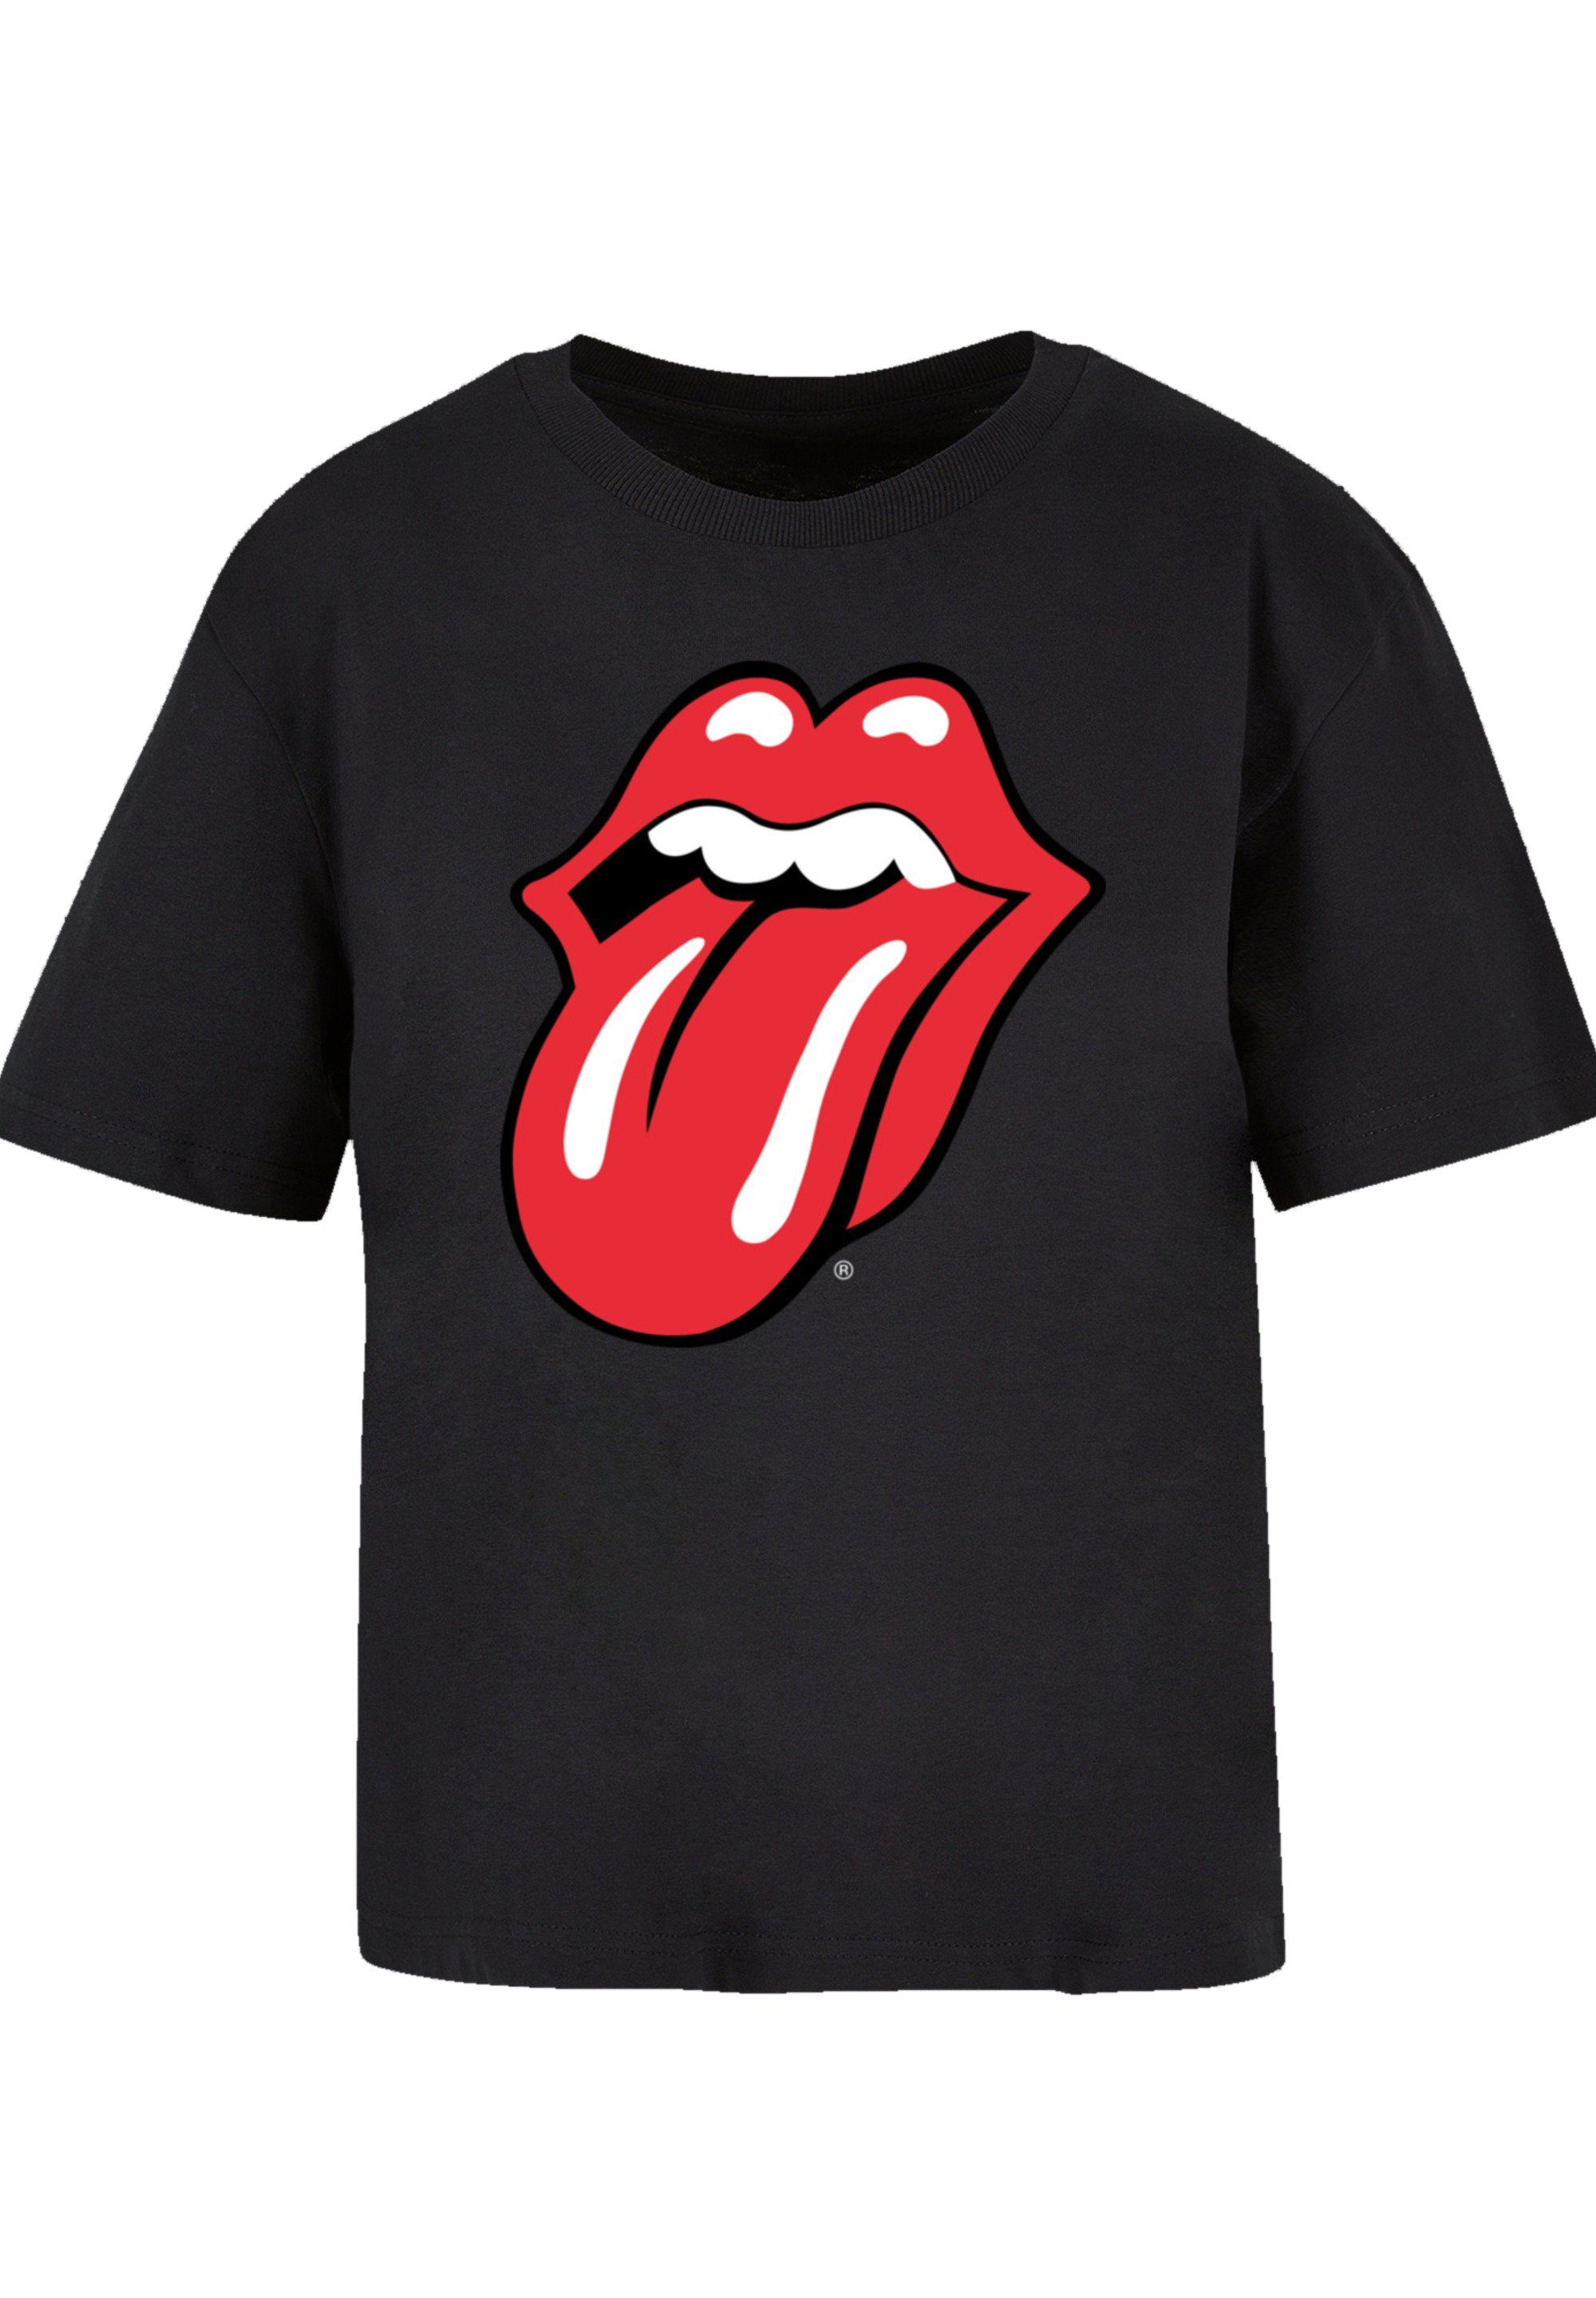 Rolling aus, Stones The eine F4NT4STIC Größe Fällt Tongue weit bitte Print, Classic kleiner T-Shirt bestellen